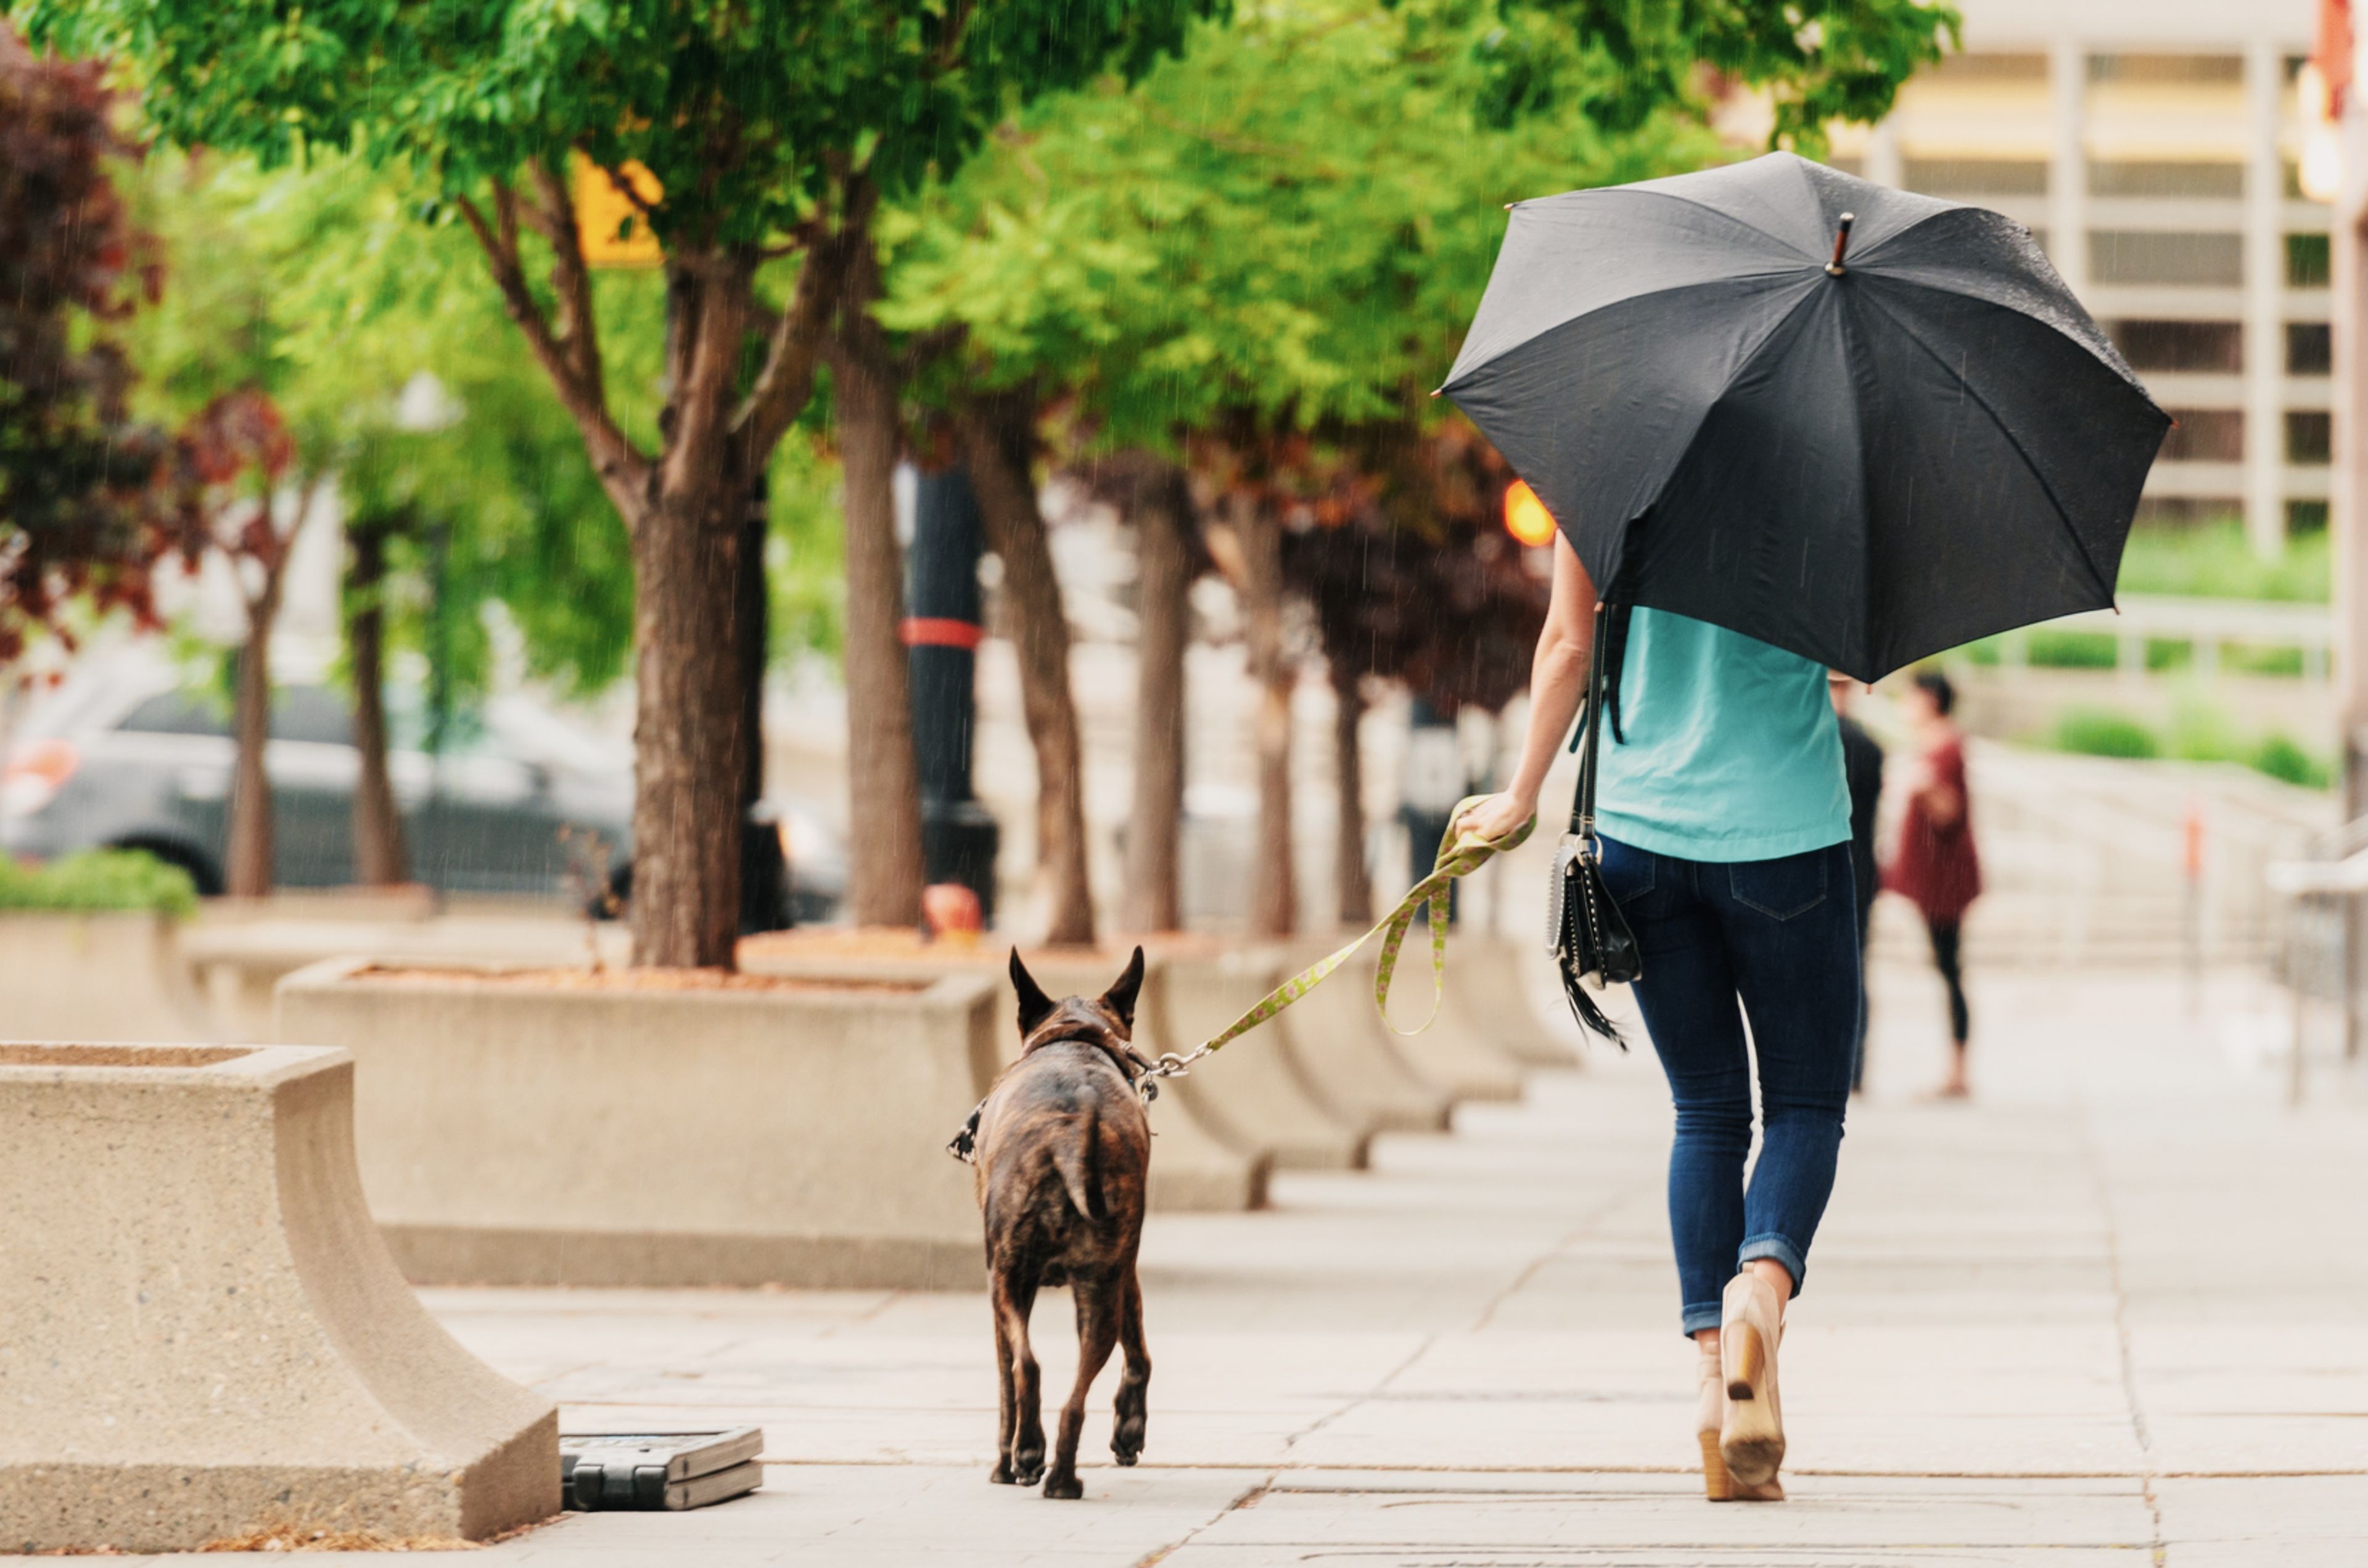 Chica paseando con paraguas en primavera